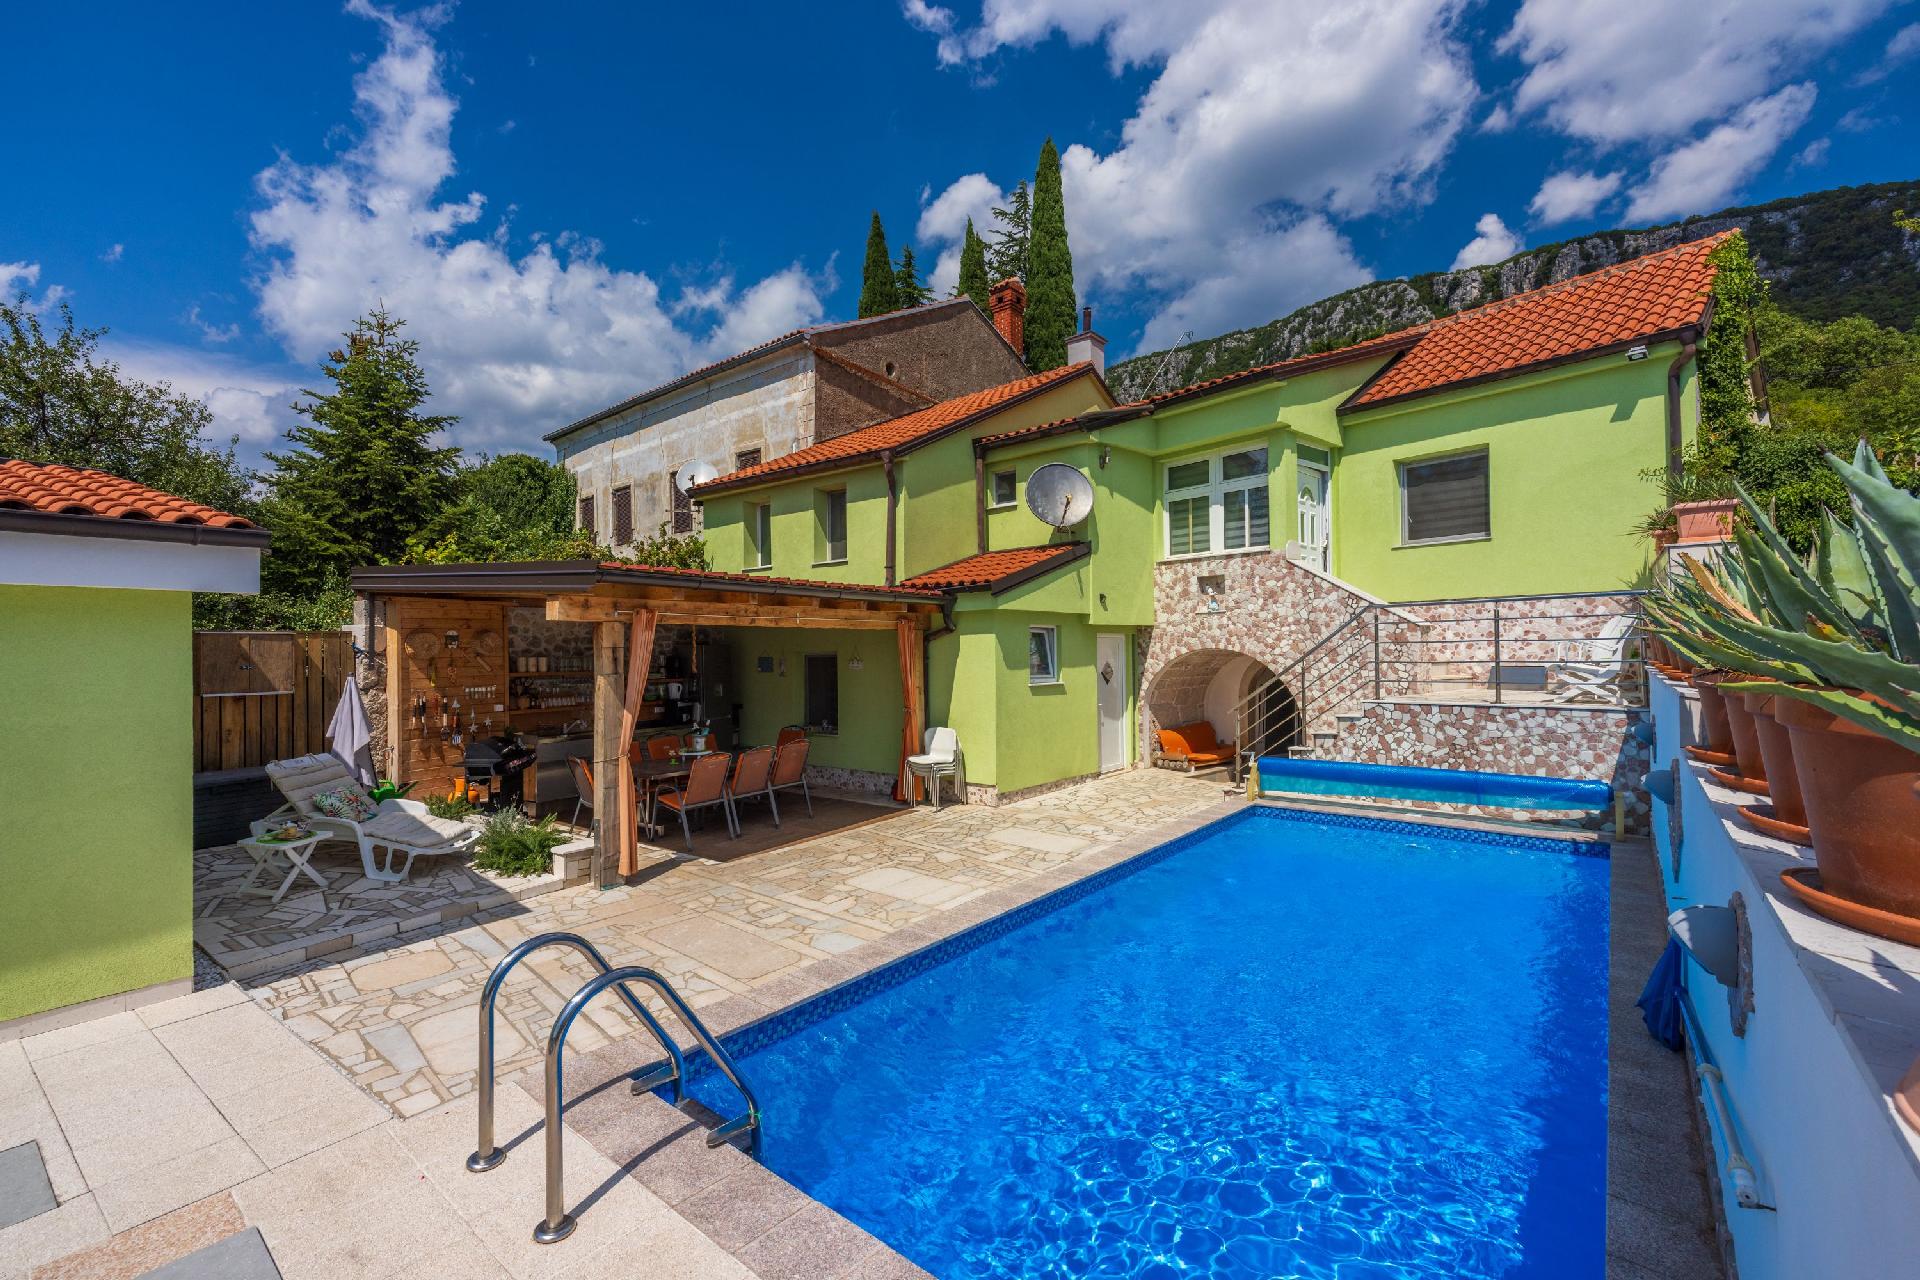 Ferienhaus mit zwei Küchen, Garten, groß Ferienhaus in Kroatien